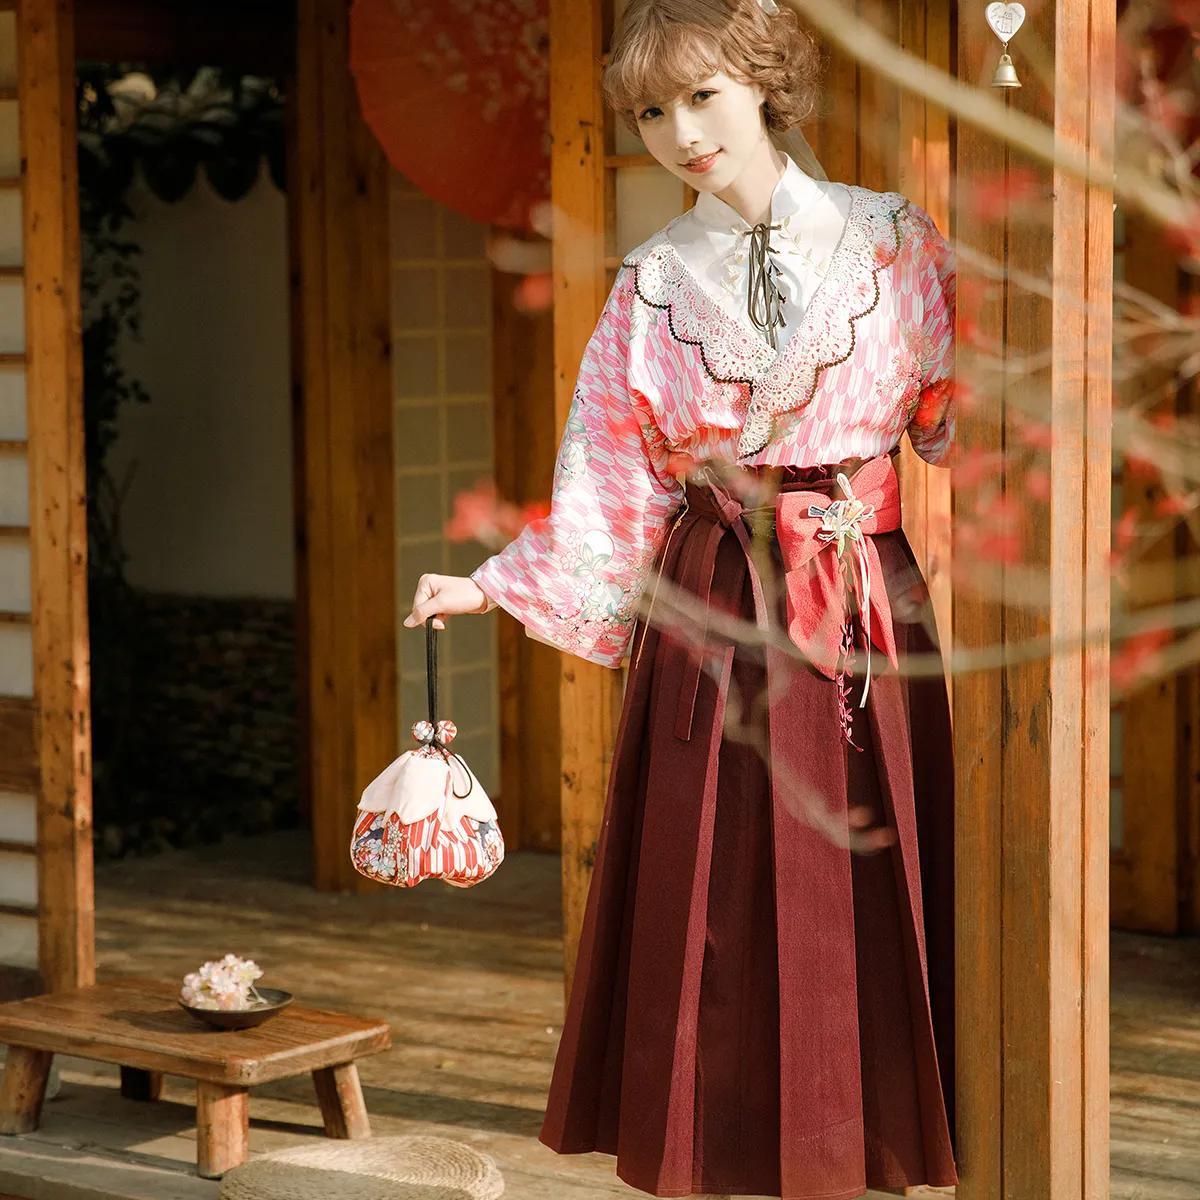 Tsukimi Sakuradori Wa Lolita ลูกศรประจำเดือนญี่ปุ่น,พิมพ์ลายดอกซากุระ/ซากุระได้รับแรงบันดาลใจจาก Pouc สไตล์ญี่ปุ่น